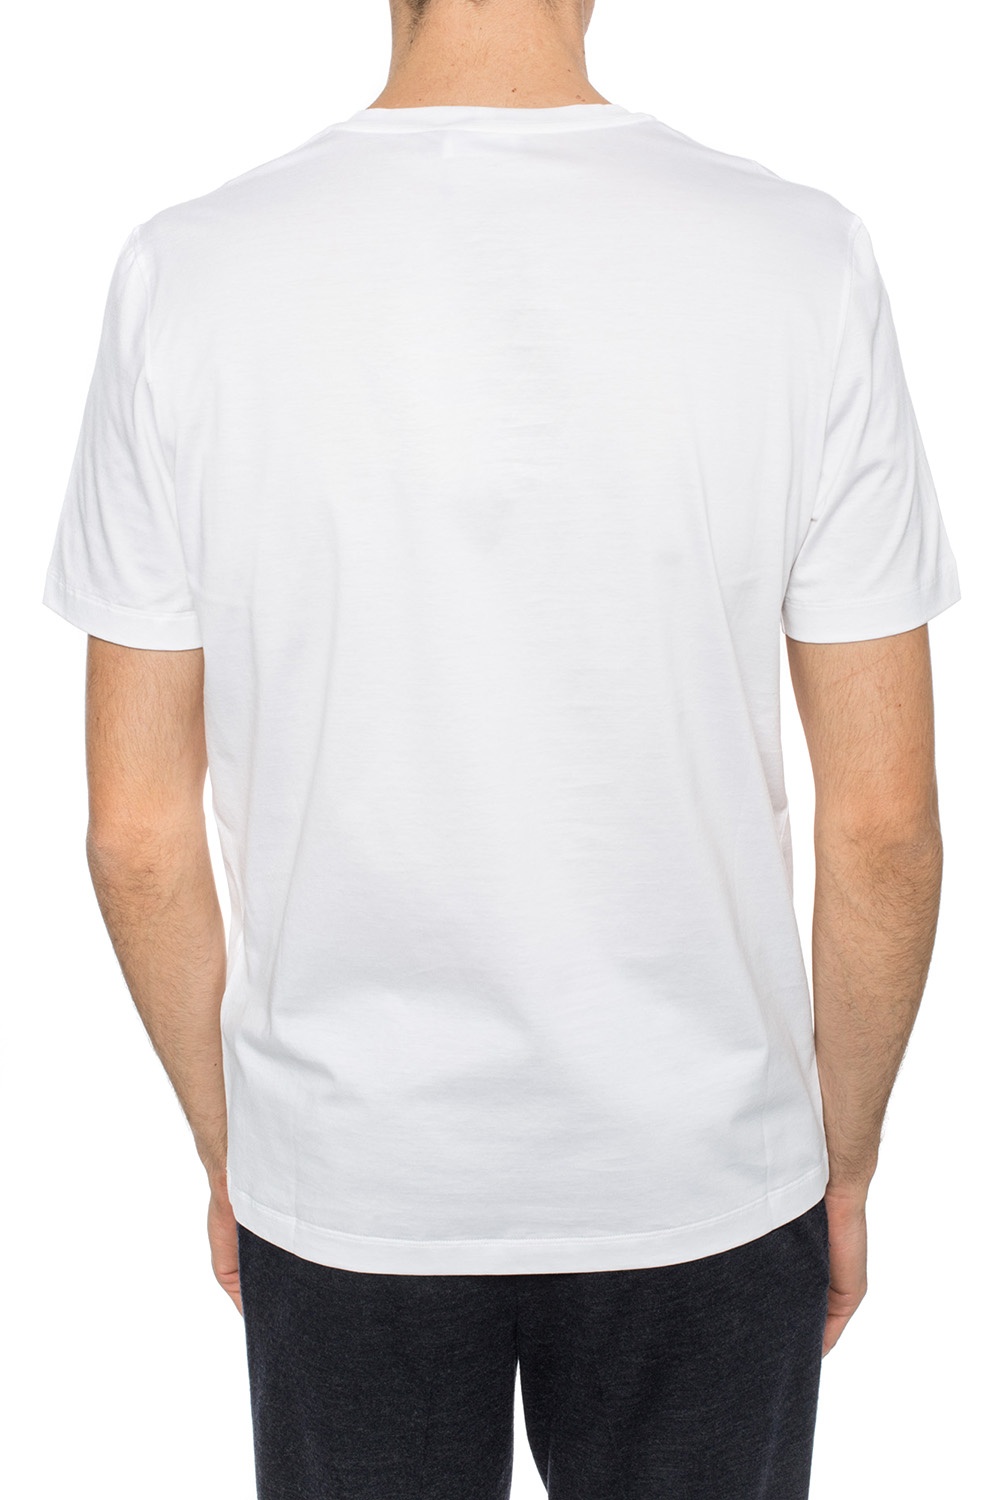 Ferragamo Crew-neck T-shirt in White for Men